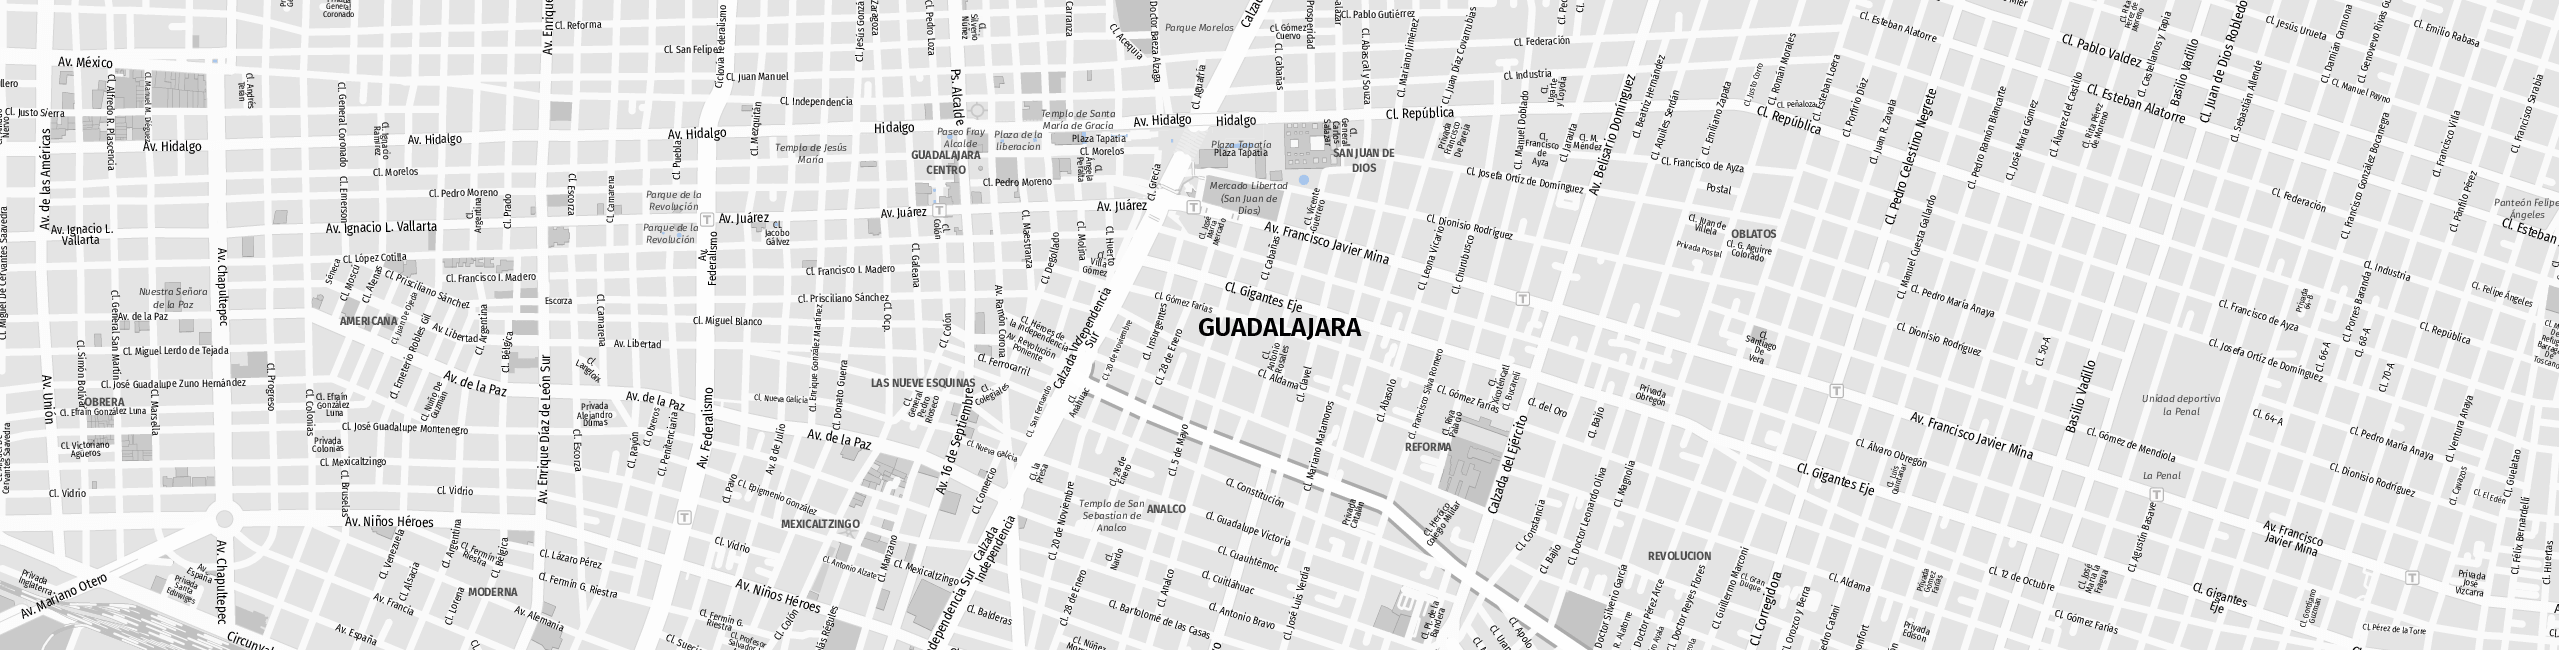 Stadtplan Guadalajara zum Downloaden.